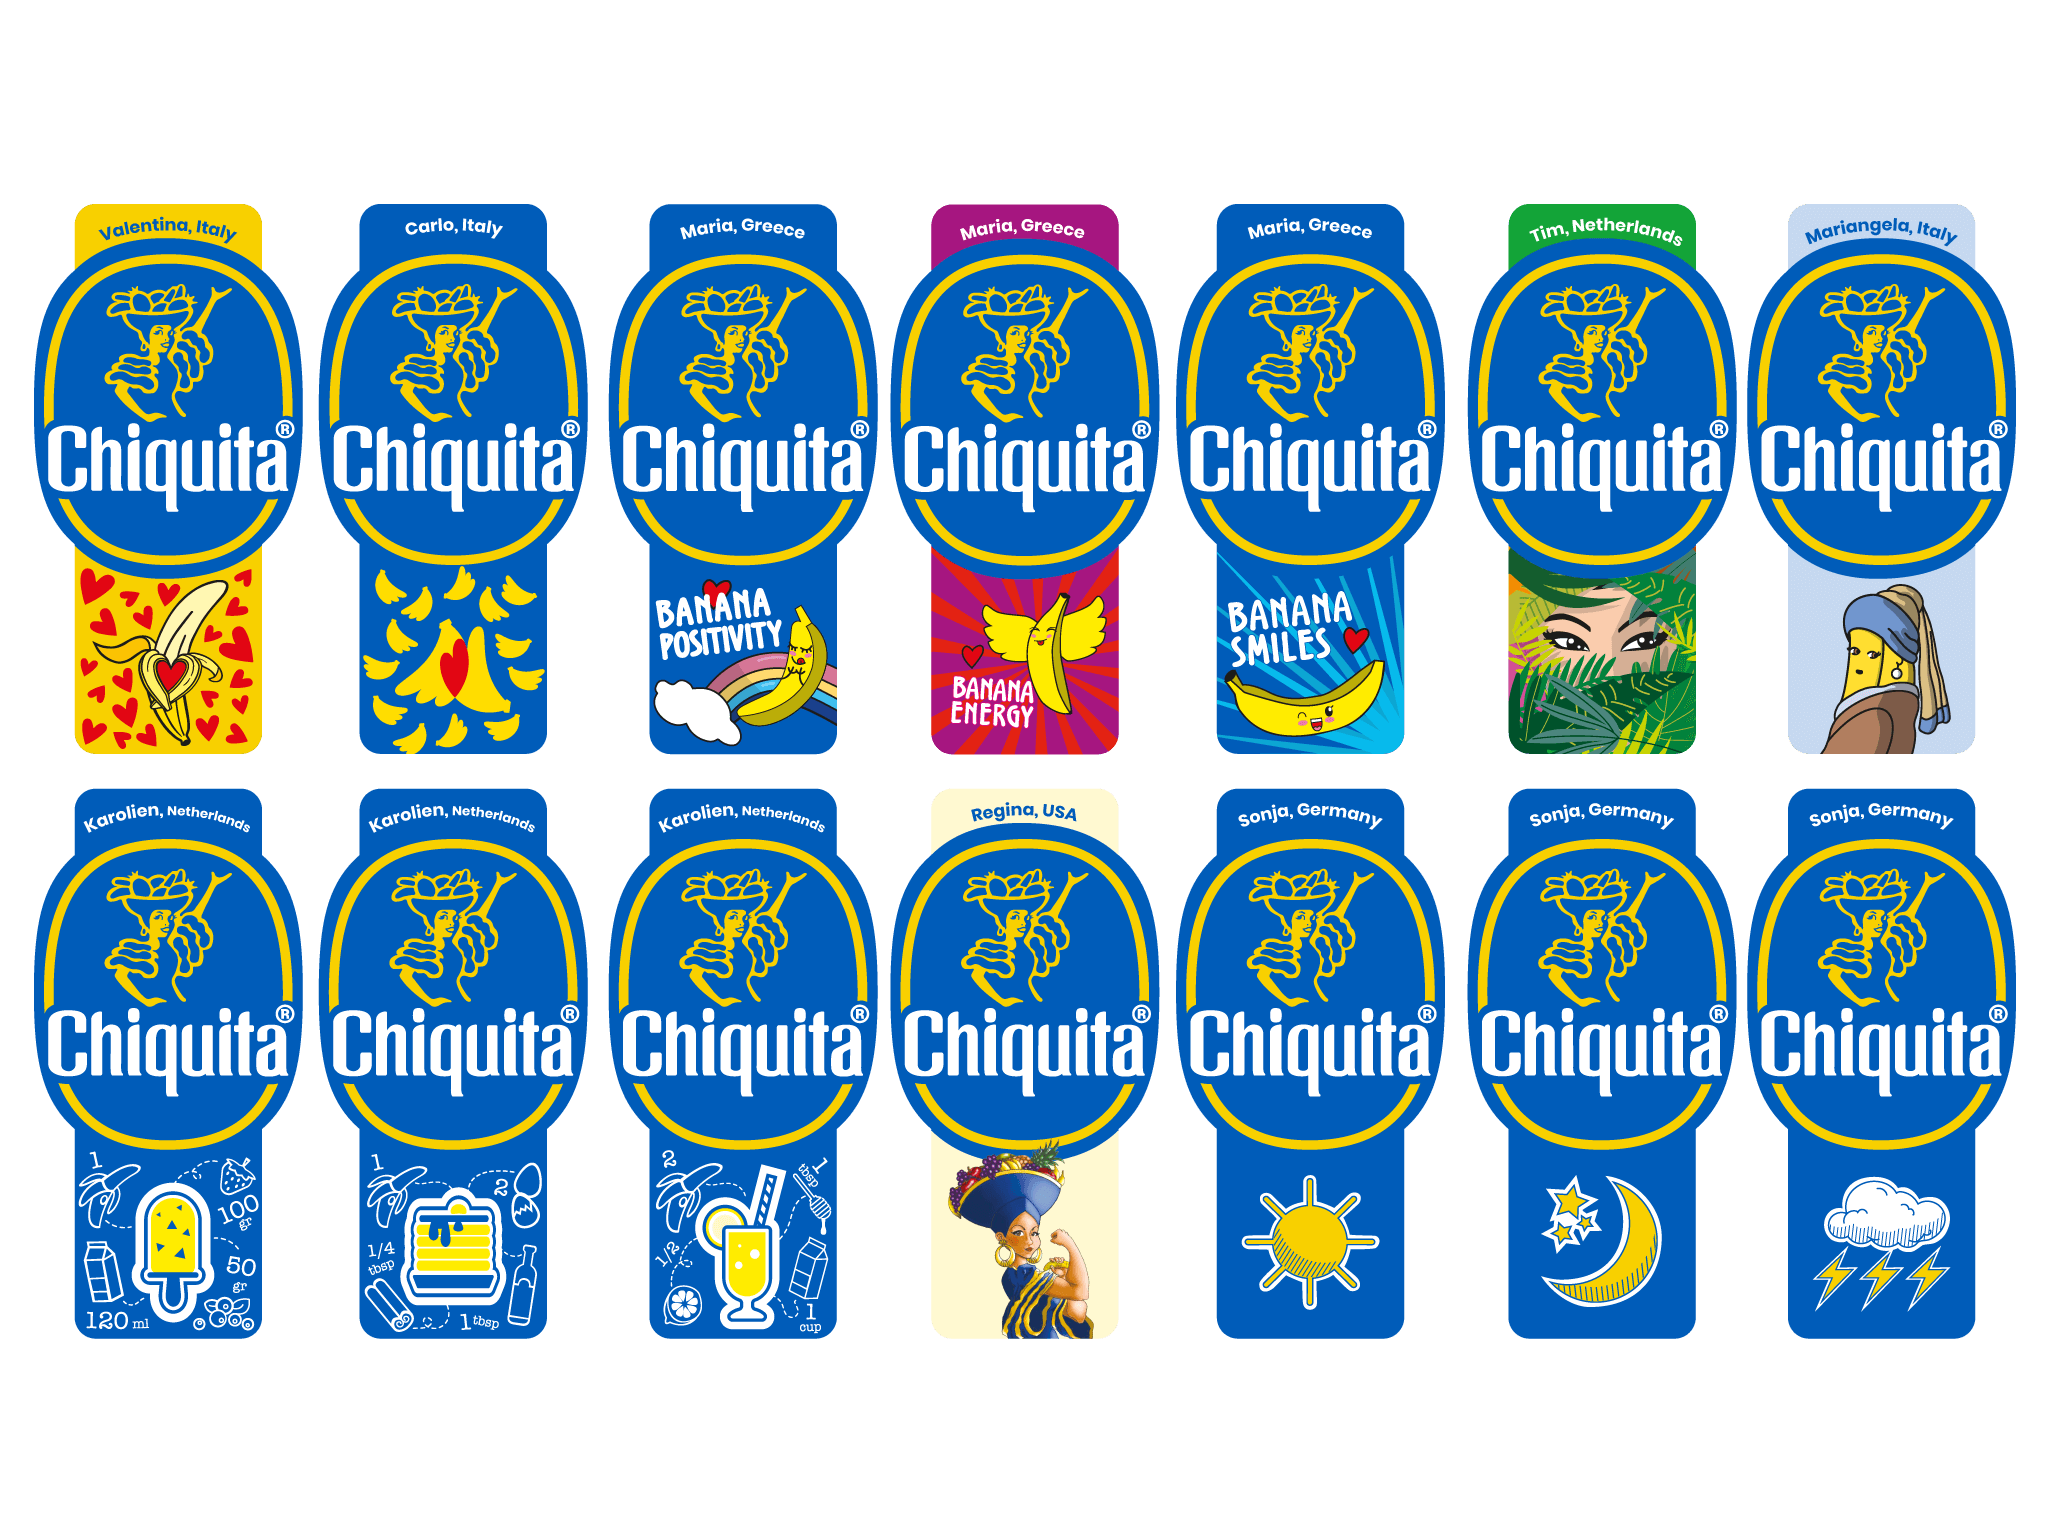 Chiquita annuncia i vincitori del concorso “Crea il tuo bollino”